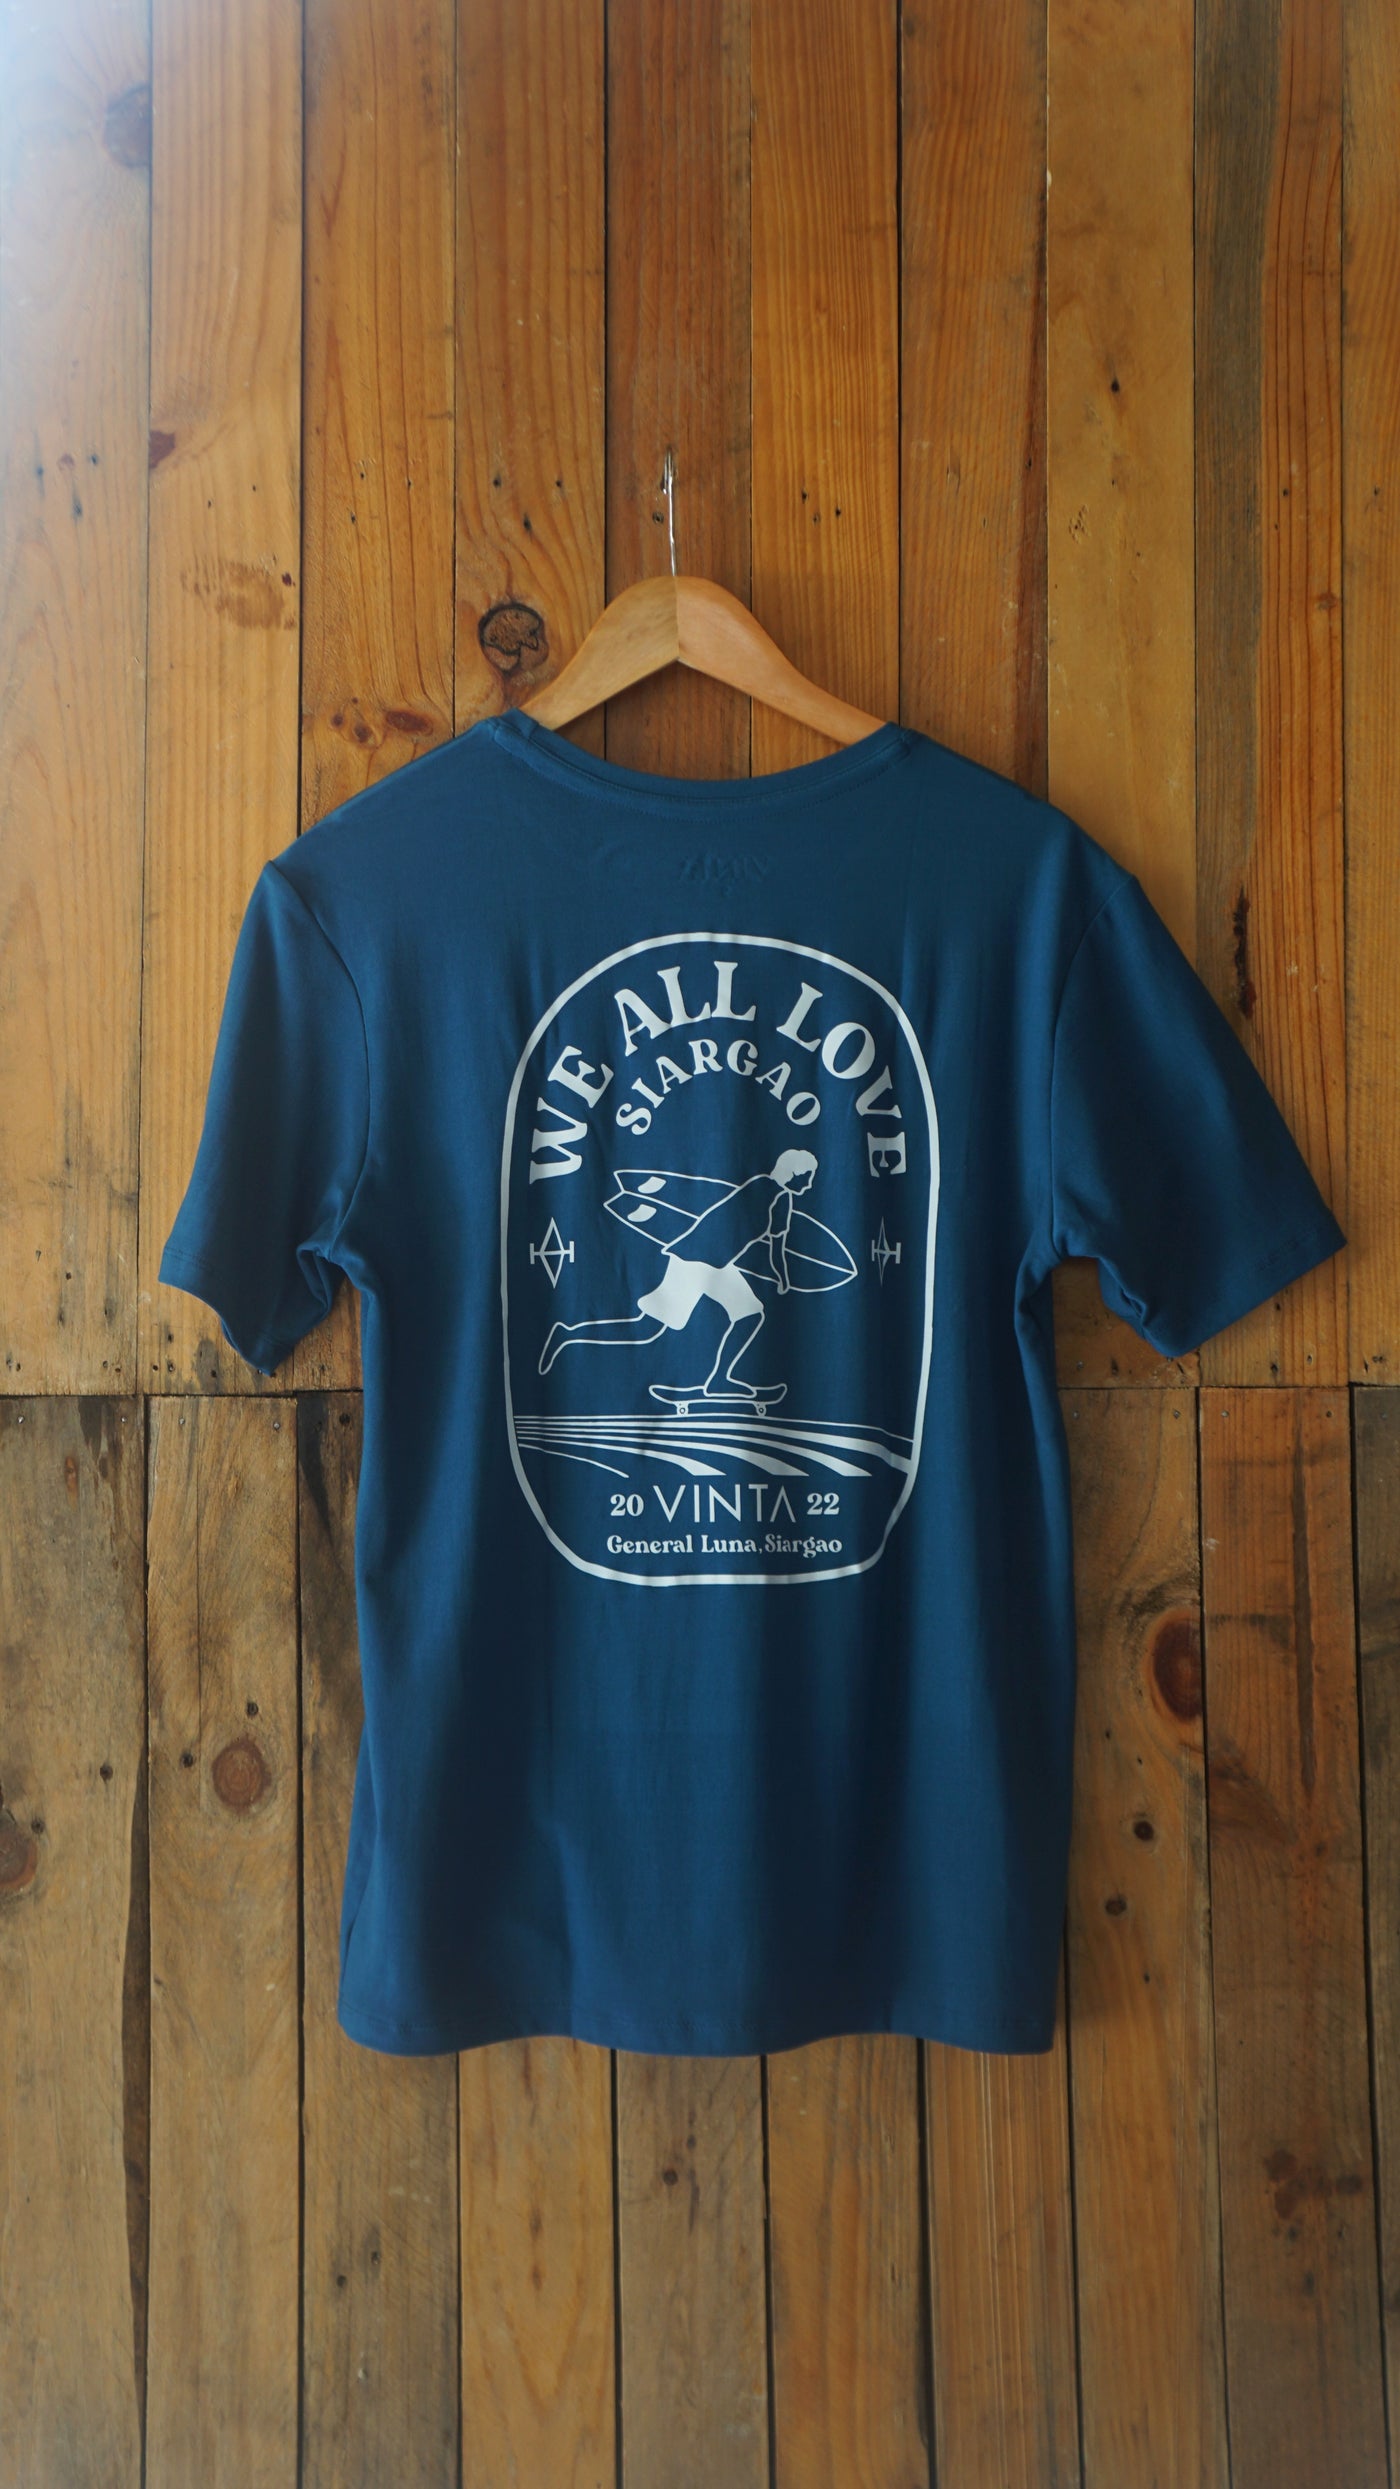 Vinta Men's T-Shirt - We All Love Siargao